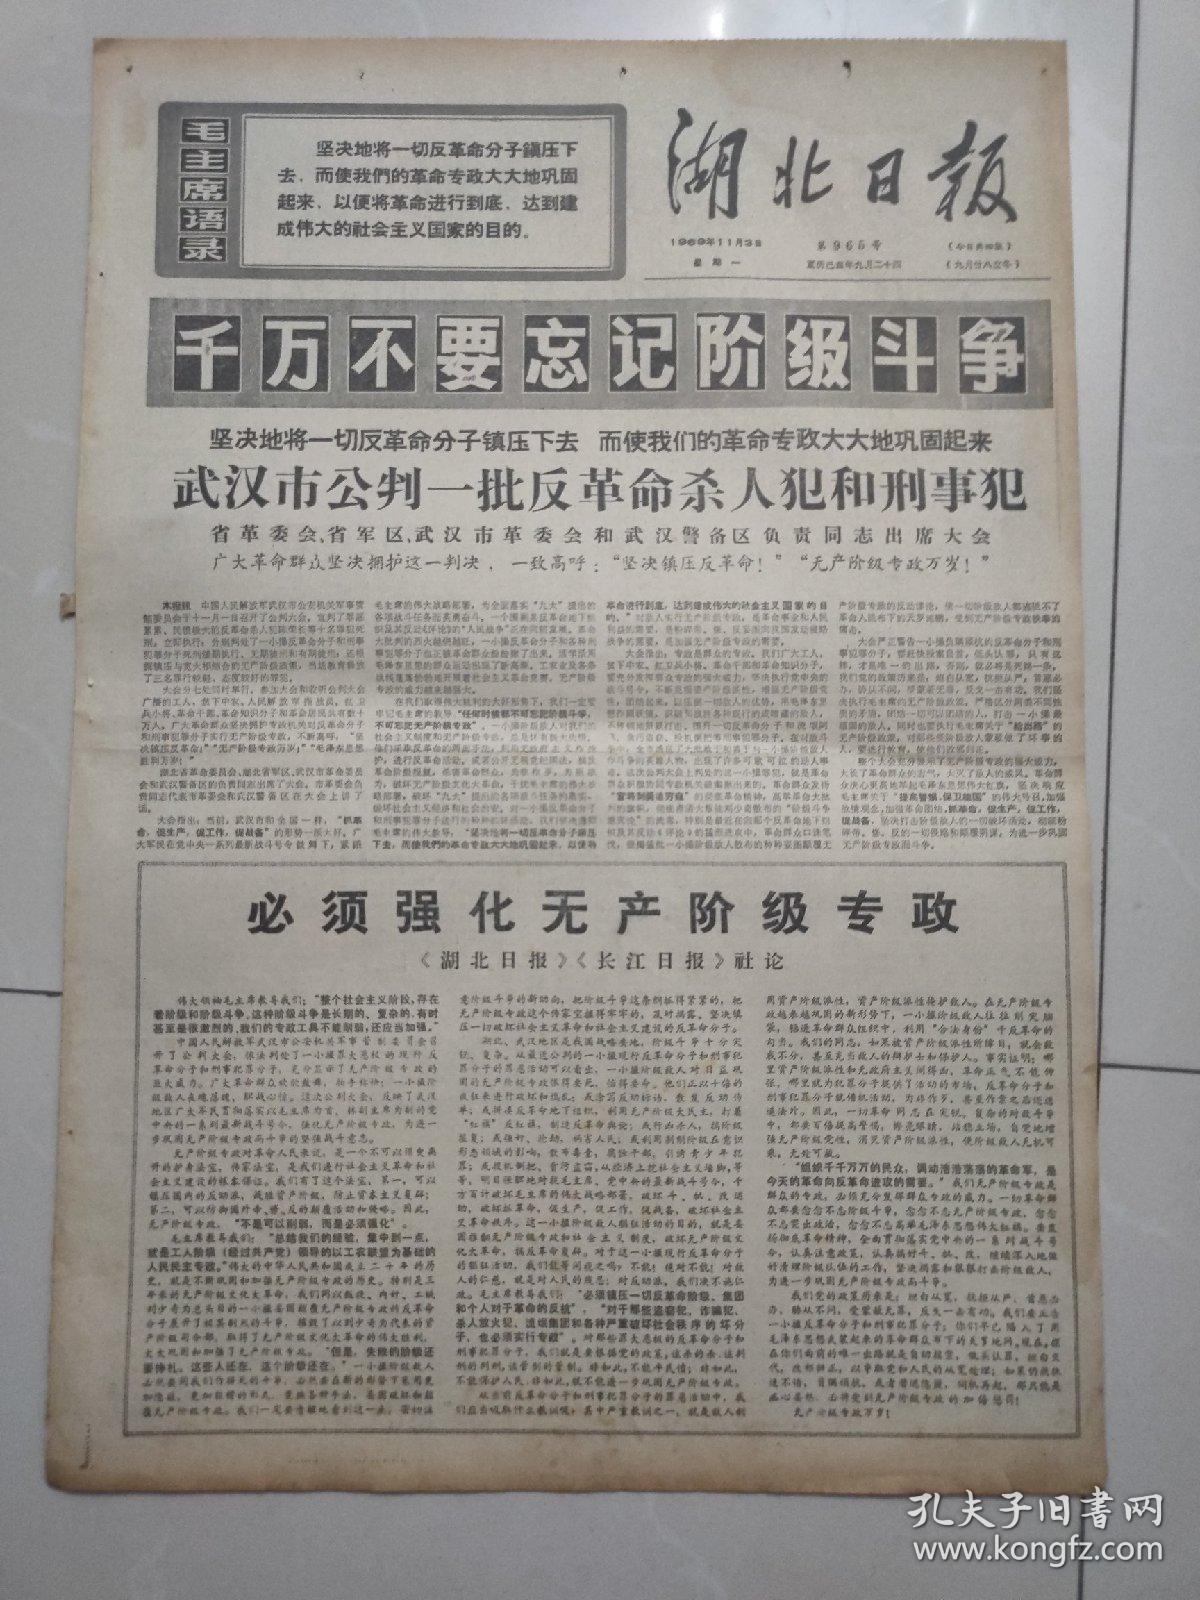 报纸湖北日报1969年11月3日 (4开四版)必须强化无产阶级专政 ；毛主席的革命文艺路线胜利万岁 ；北加里曼丹 人民武装在战斗中成长 壮大。